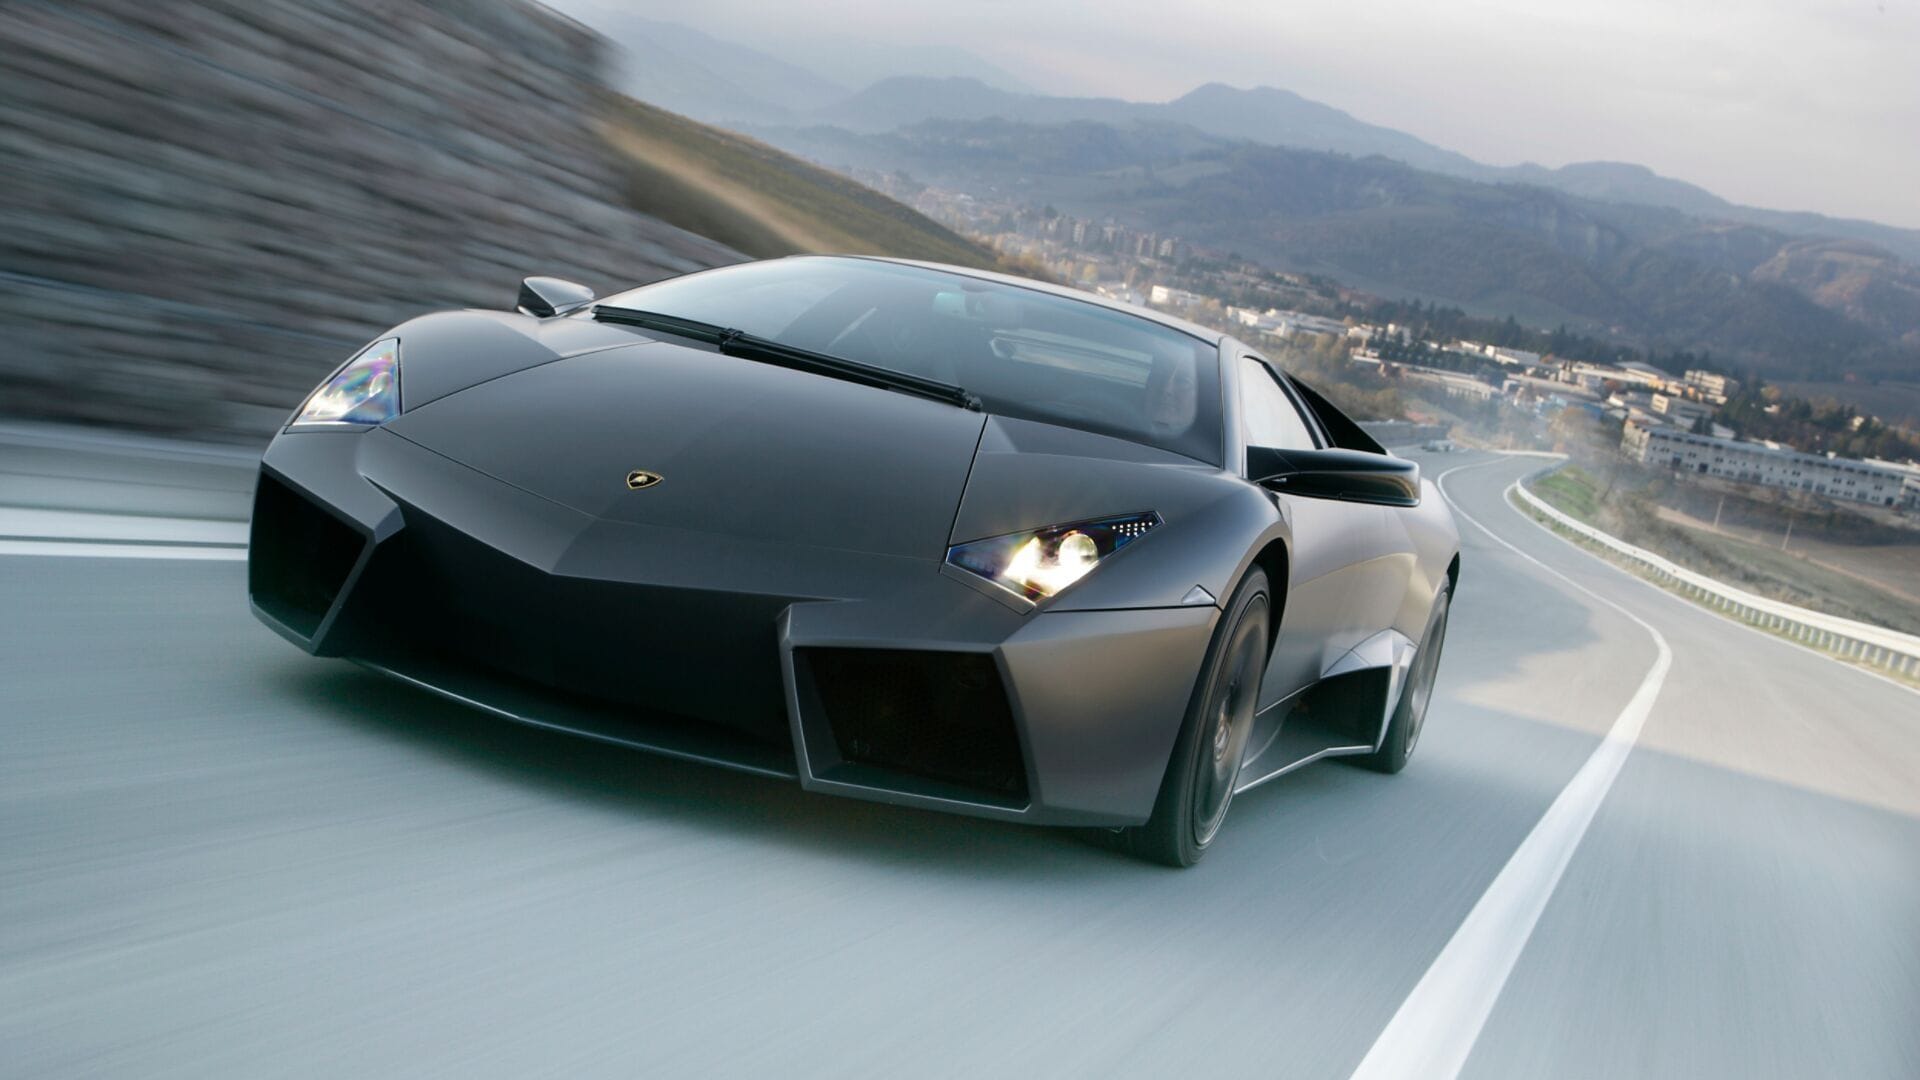 Lamborghini reventon